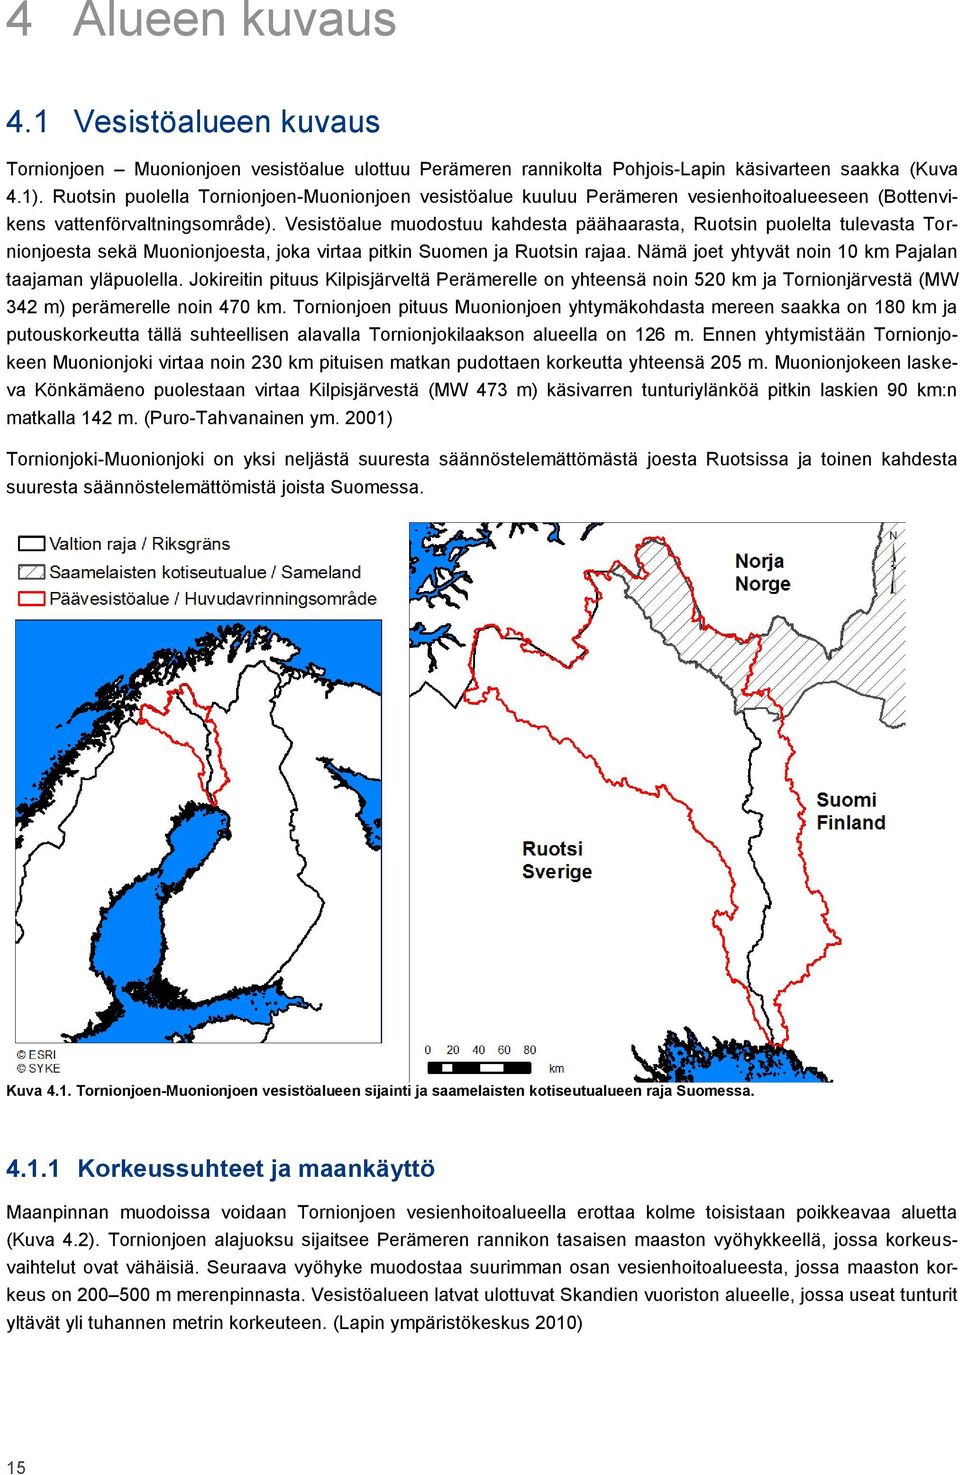 Vesistöalue muodostuu kahdesta päähaarasta, Ruotsin puolelta tulevasta Tornionjoesta sekä Muonionjoesta, joka virtaa pitkin Suomen ja Ruotsin rajaa.